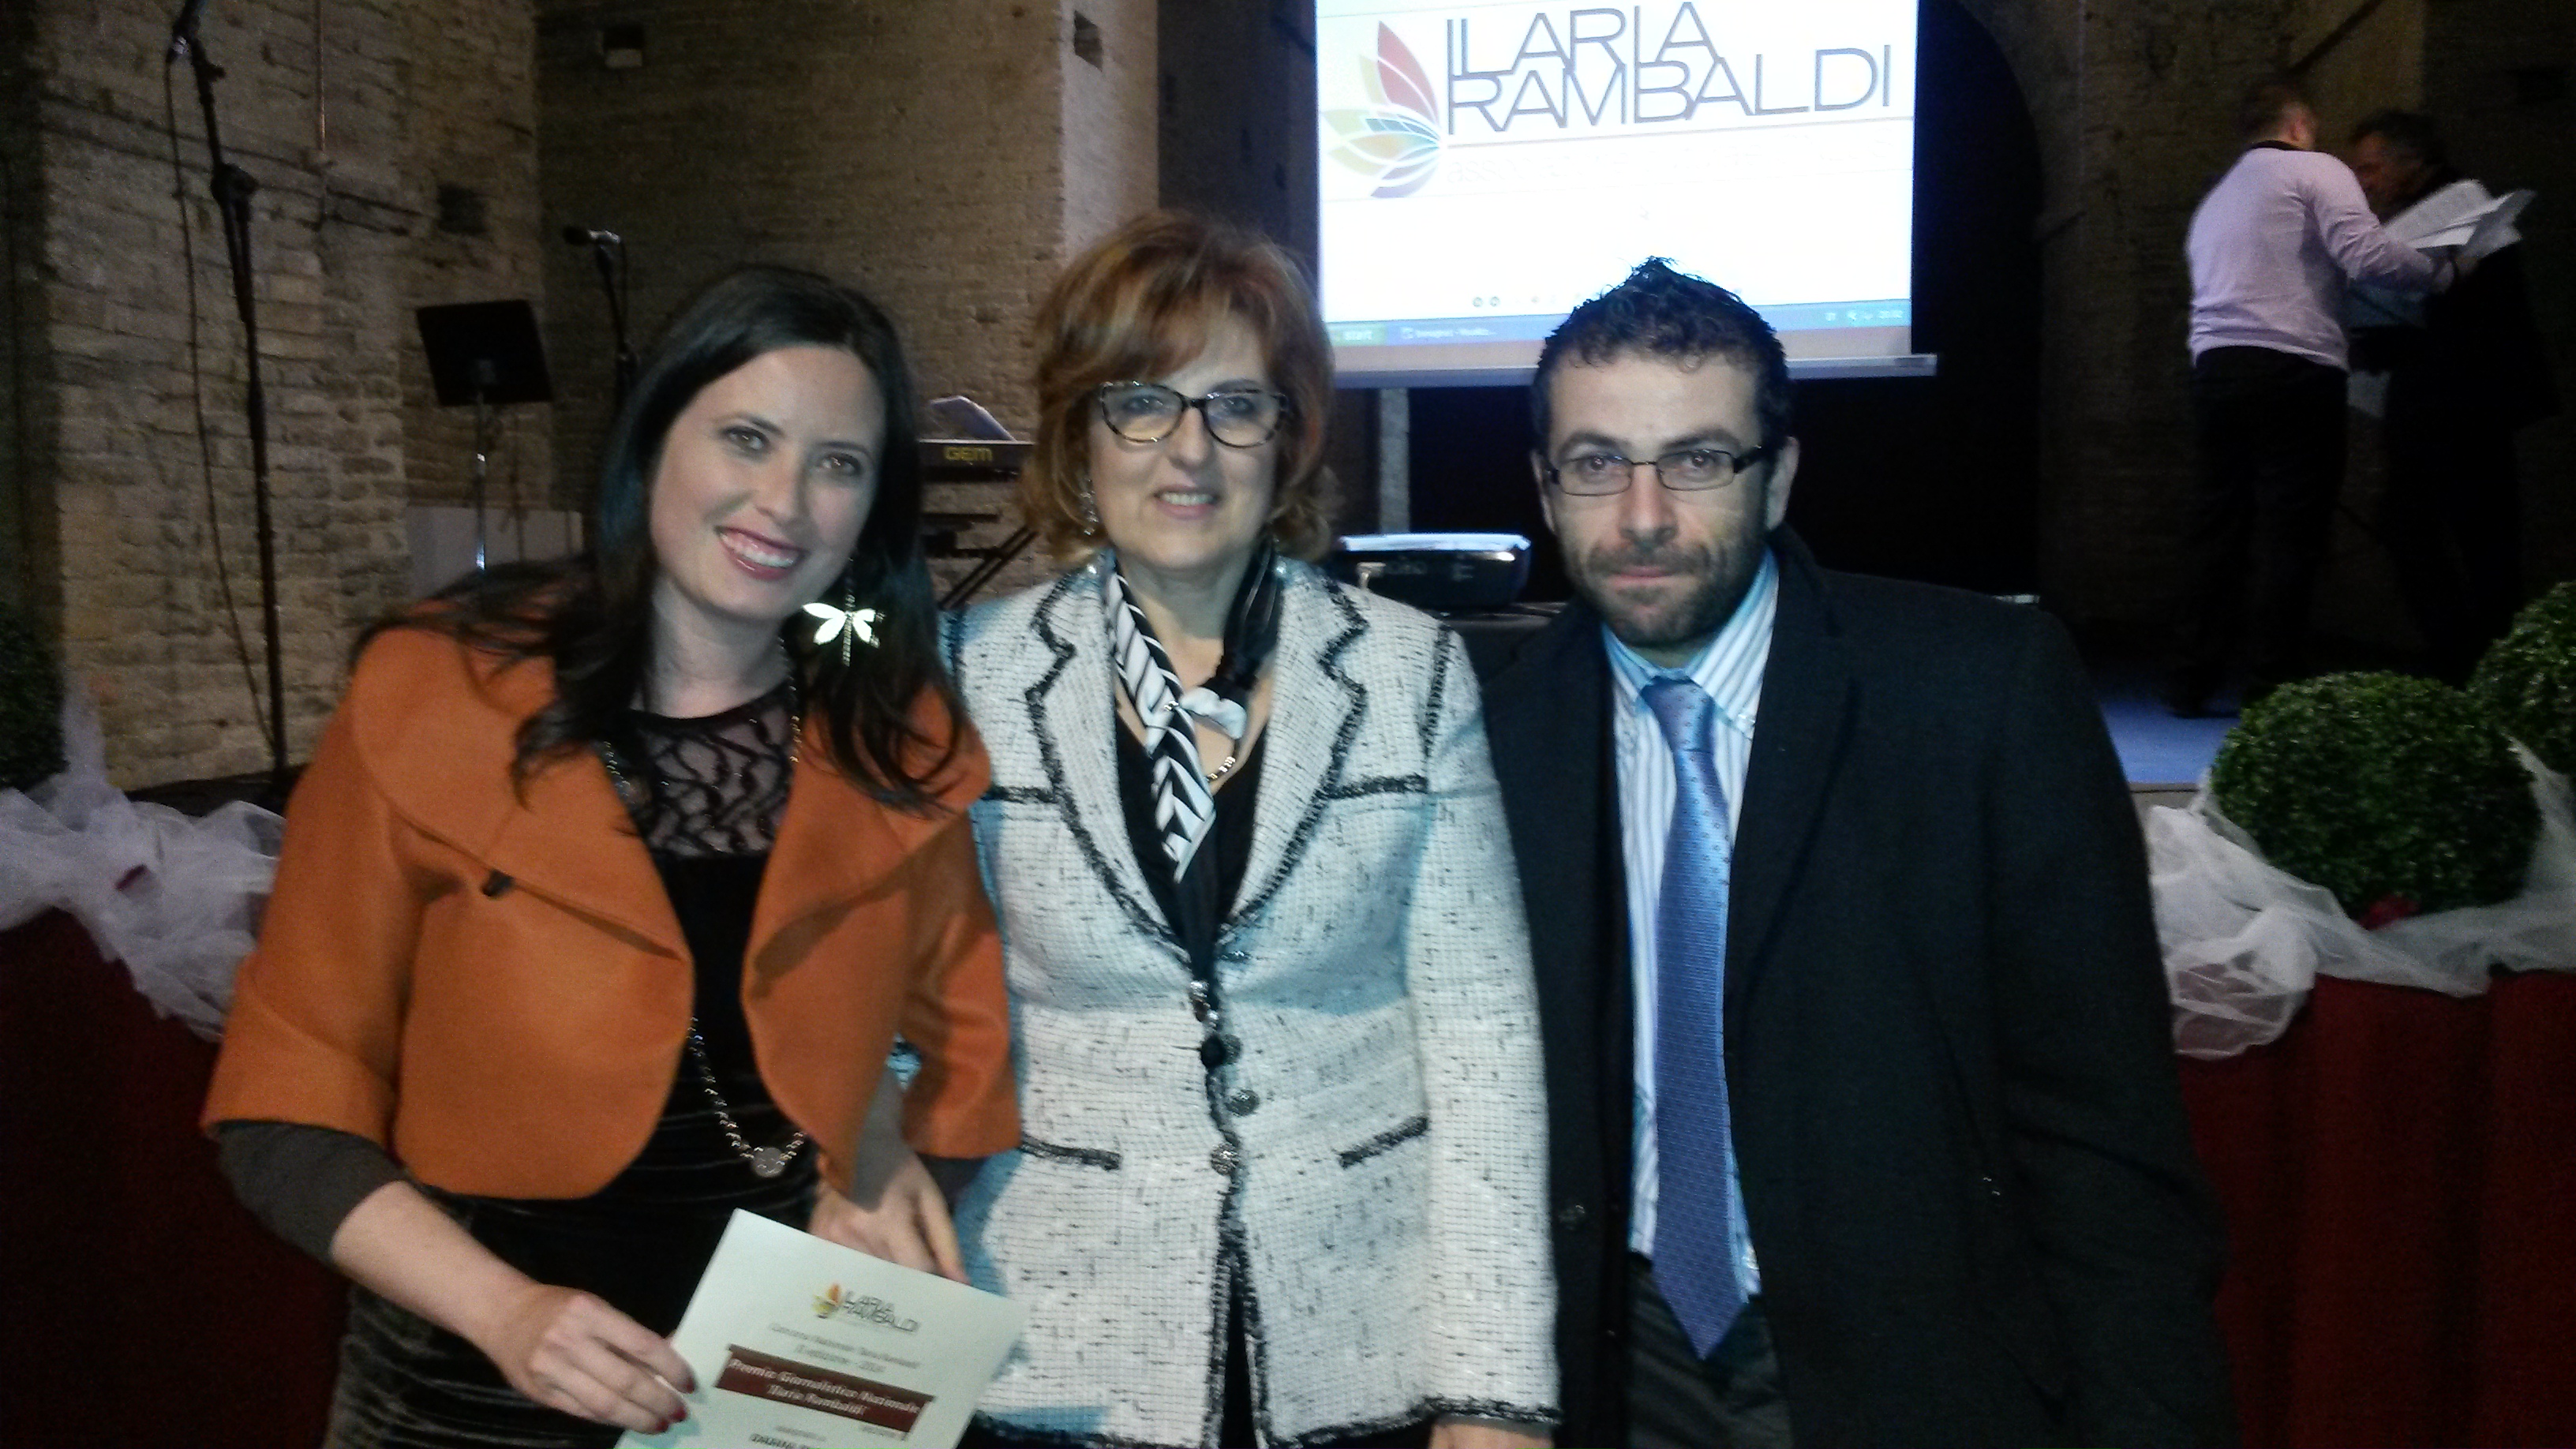 A Daiana Paoli il premio nazionale di giornalismo “Ilaria Rambaldi”